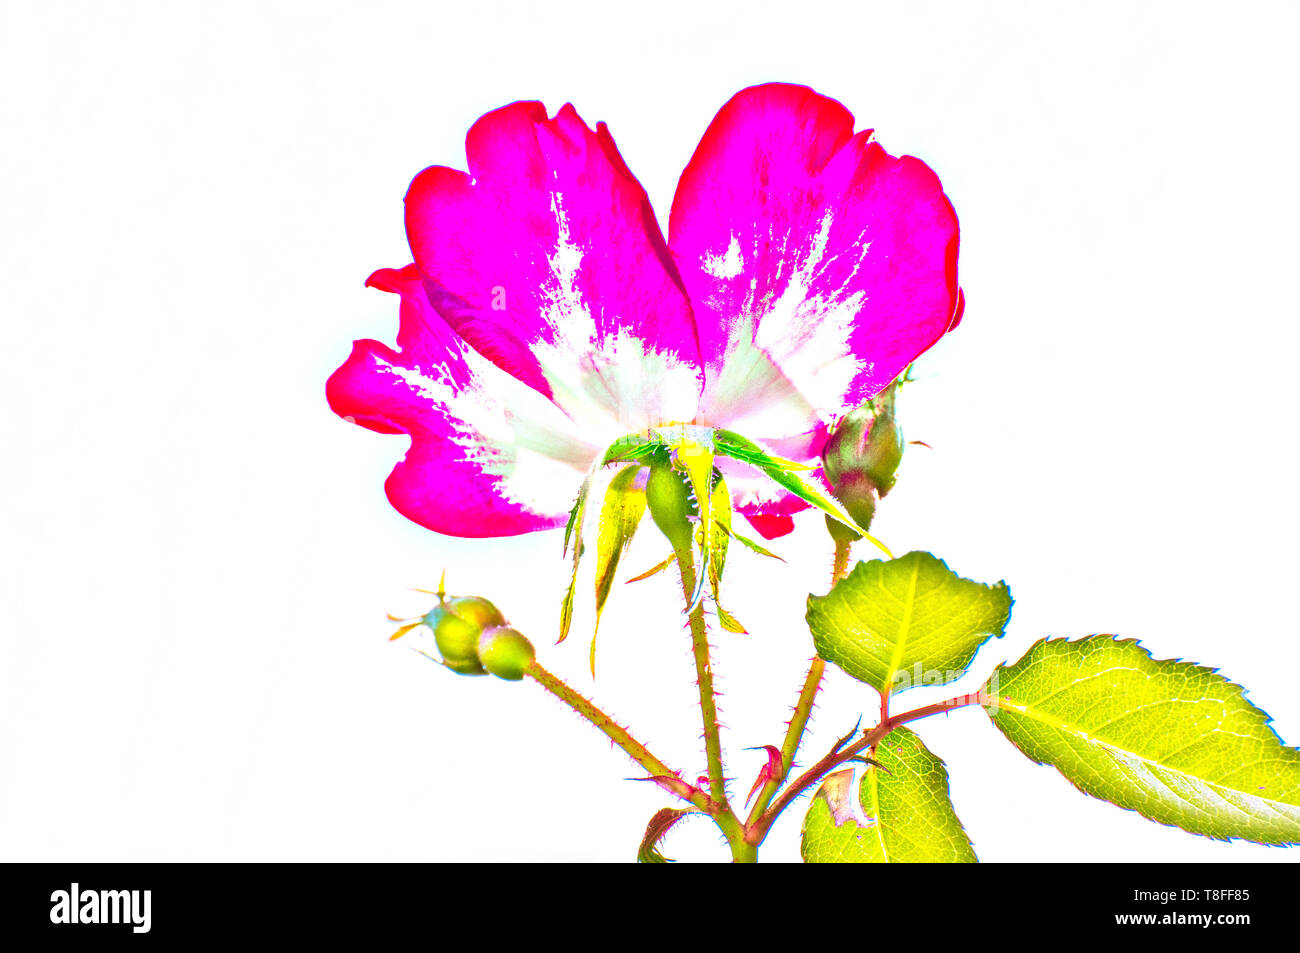 Migliorate digitalmente immagine di una fioritura rosa e giallo cocktail rose in un giardino urbano Foto Stock